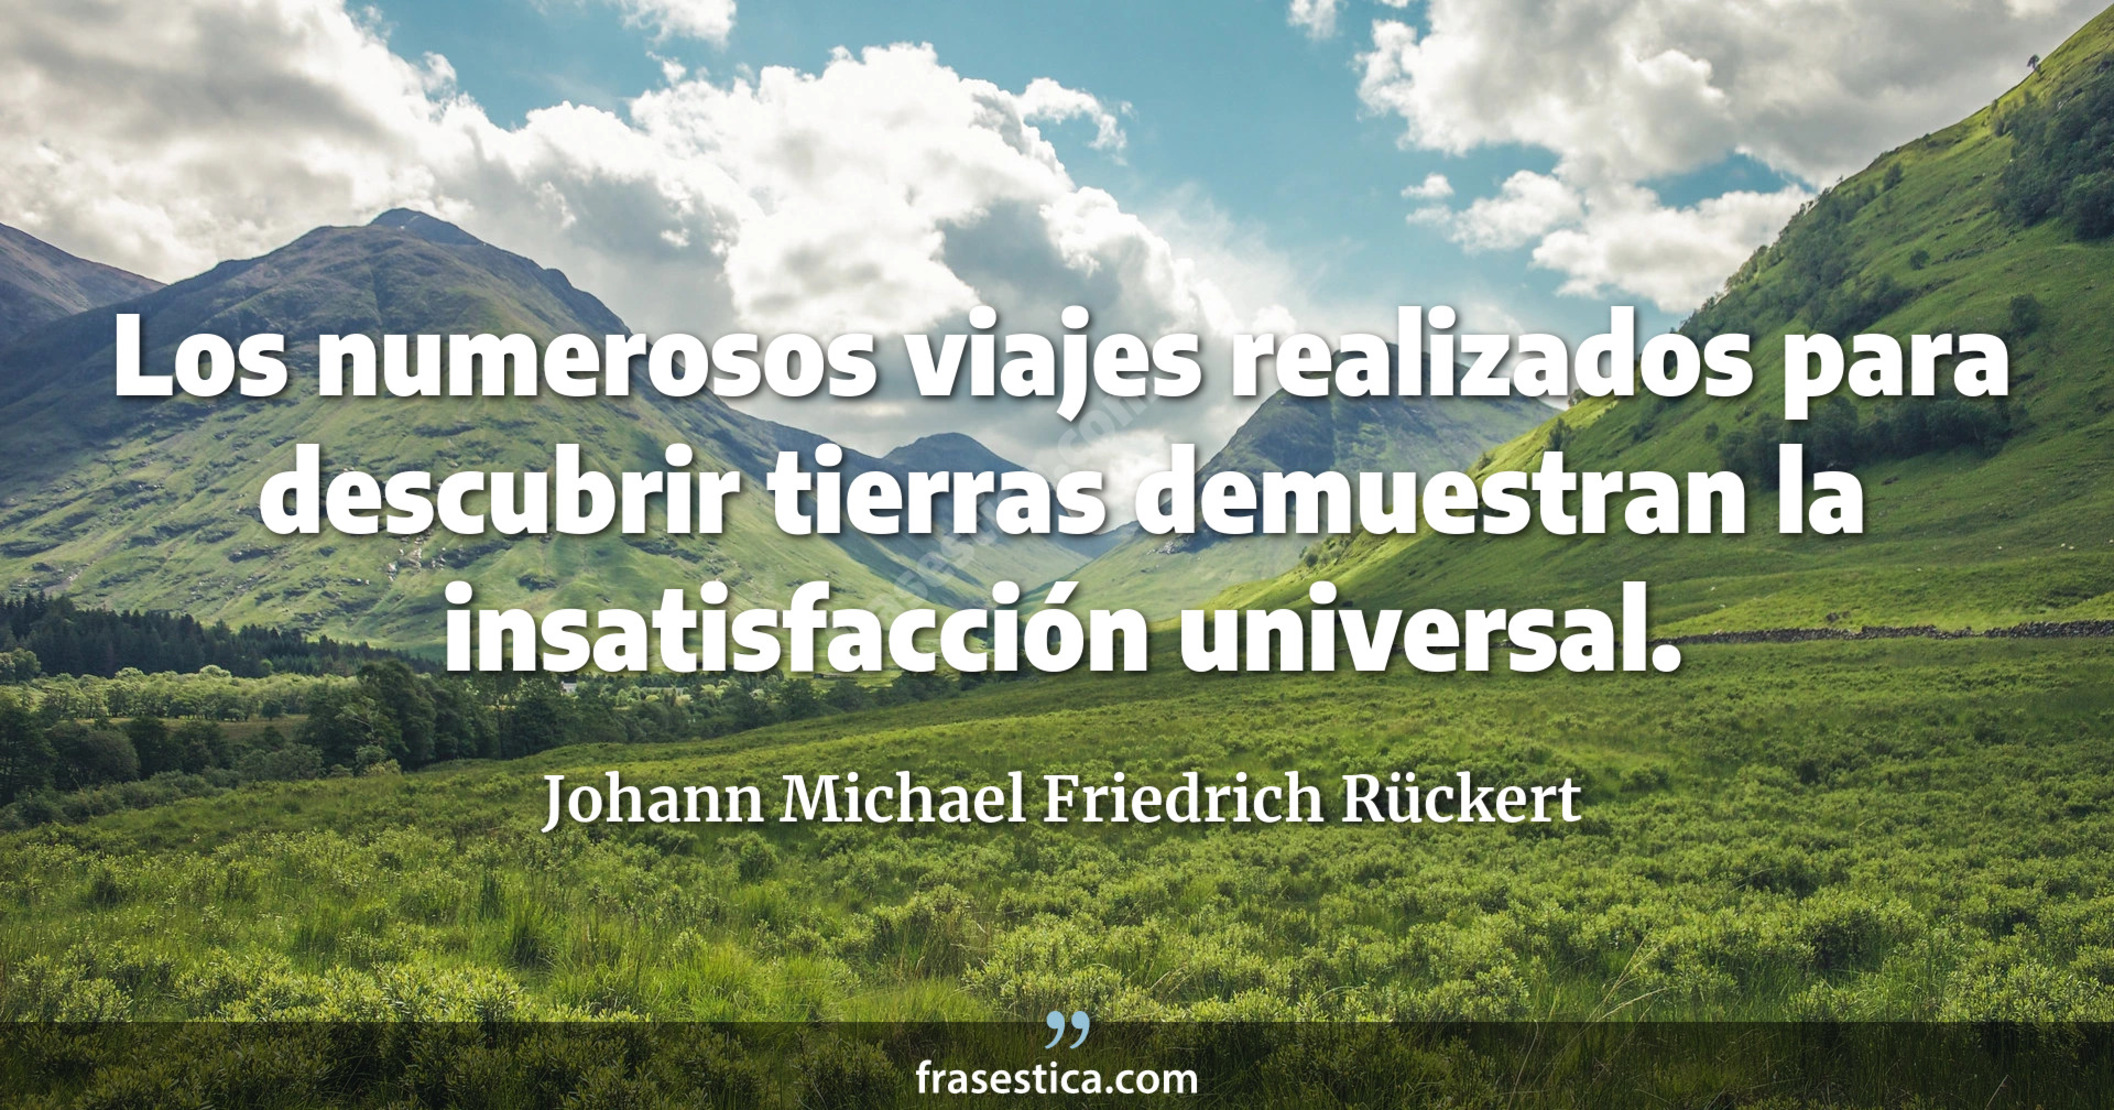 Los numerosos viajes realizados para descubrir tierras demuestran la insatisfacción universal. - Johann Michael Friedrich Rückert